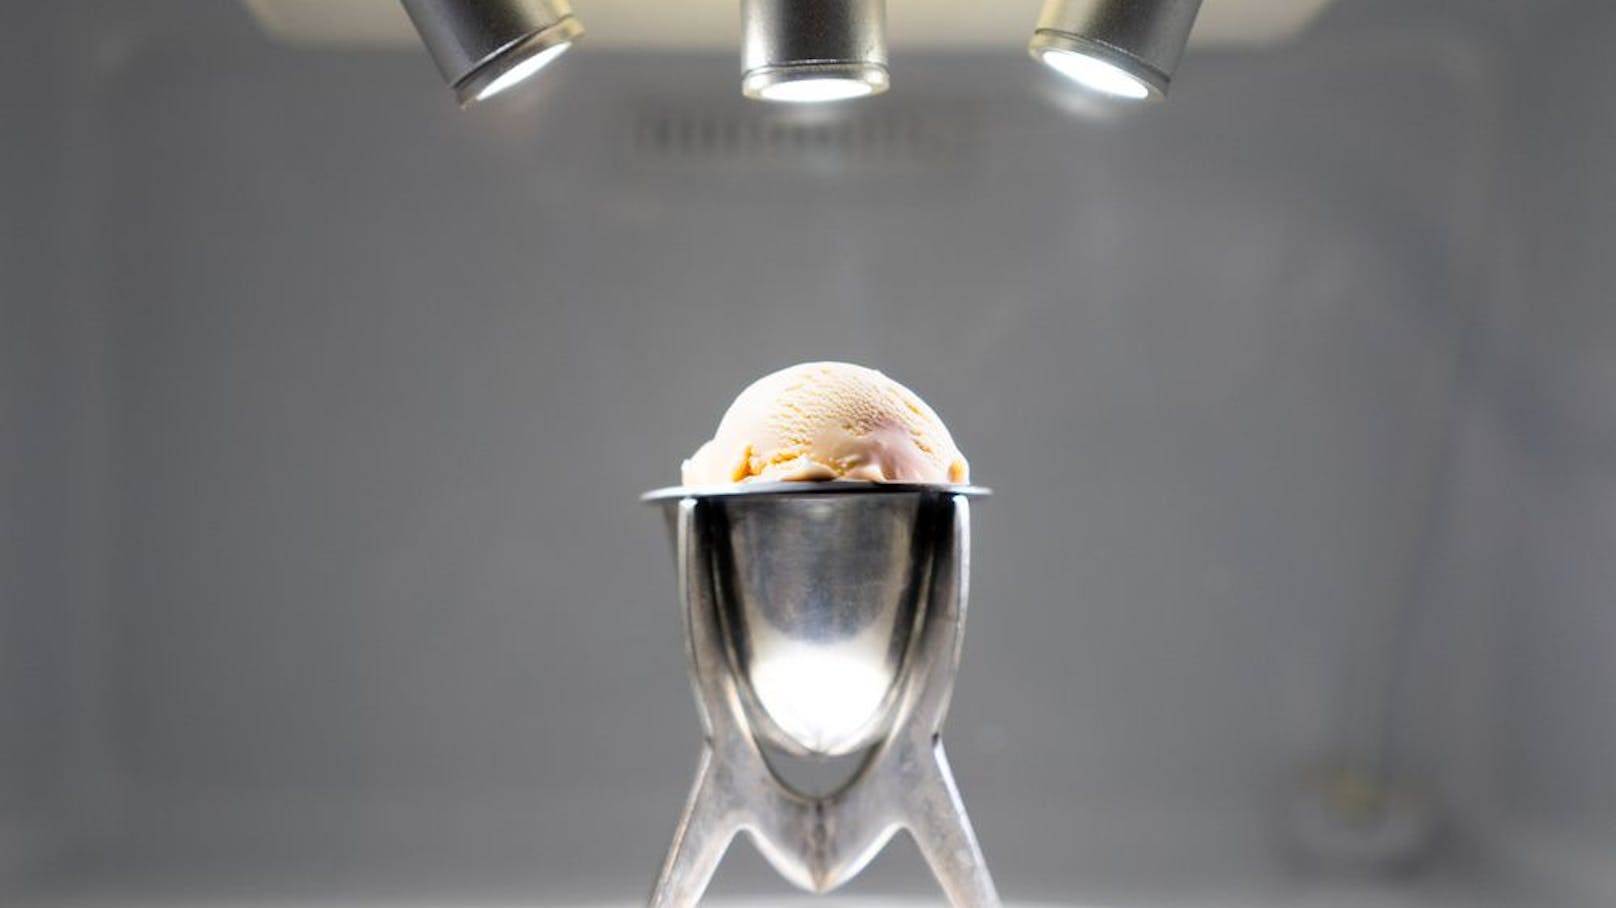 Ortolani präsentierte das Eis in einem verschlossenen Kühlschrank auf der CSM-Absolventenausstellung (Bild).